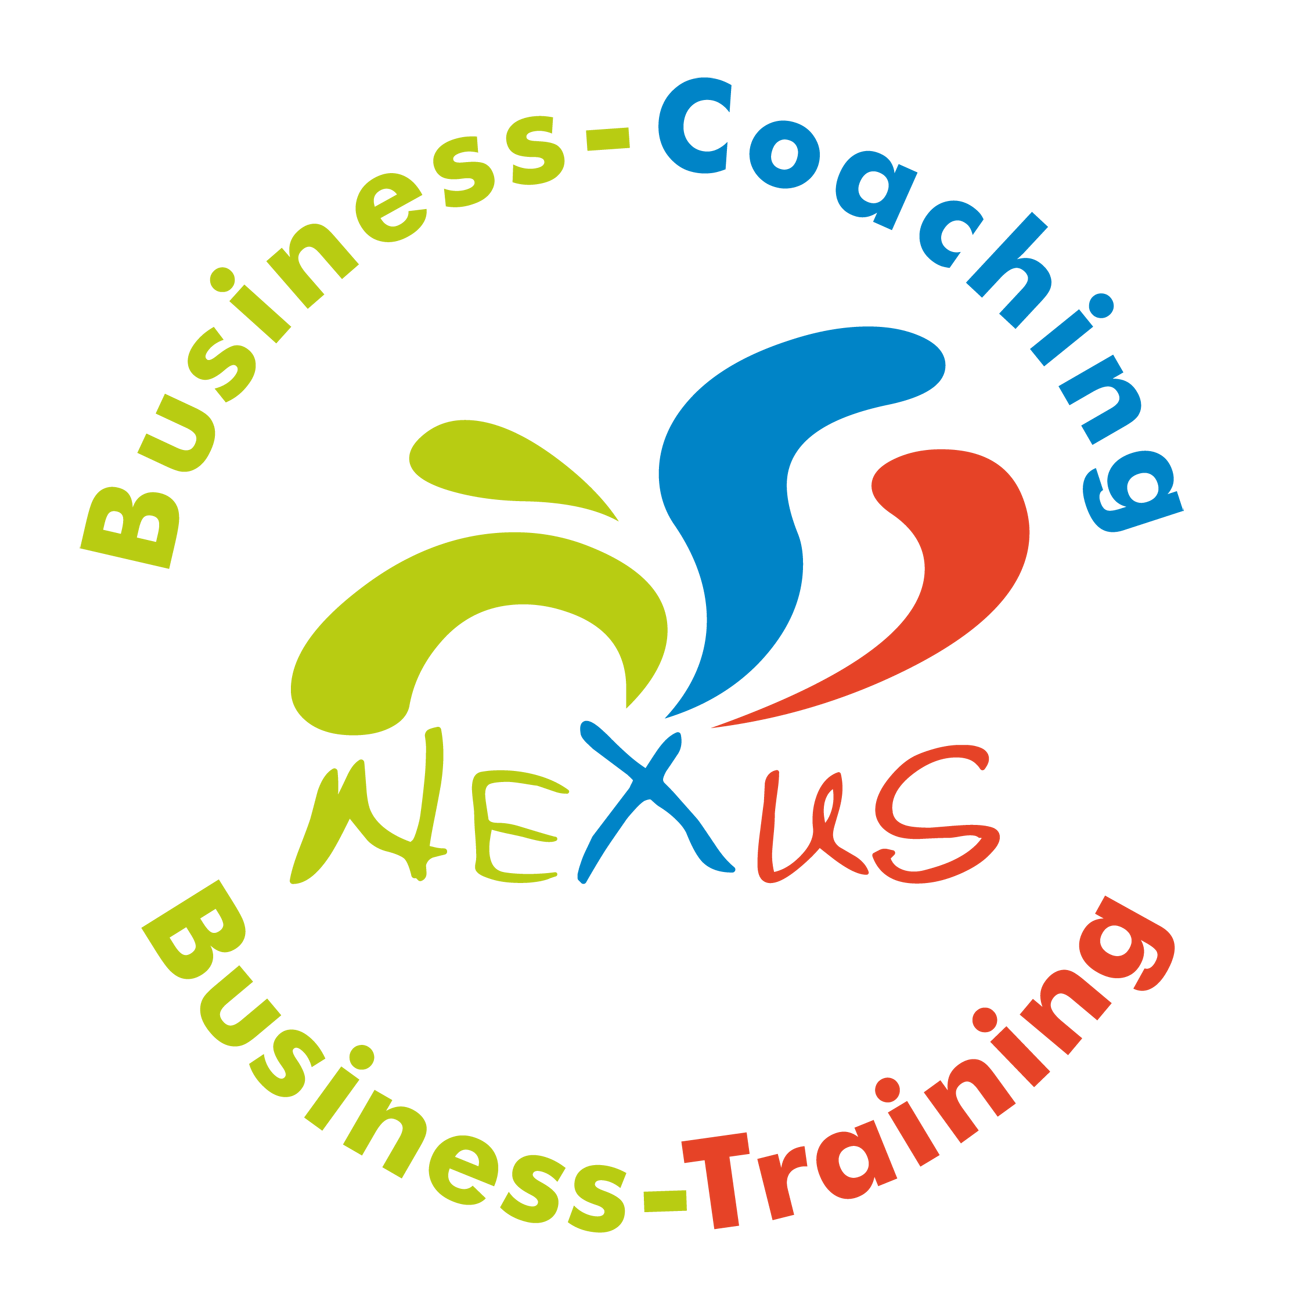 Business-Coaching Pfungstadt, Business-Einzelcoaching, Business-Training, Führungskräfte-Coaching Pfungstadt, Führungskräfte-Training, Kommunikationstraining, Persönlichkeitstraining